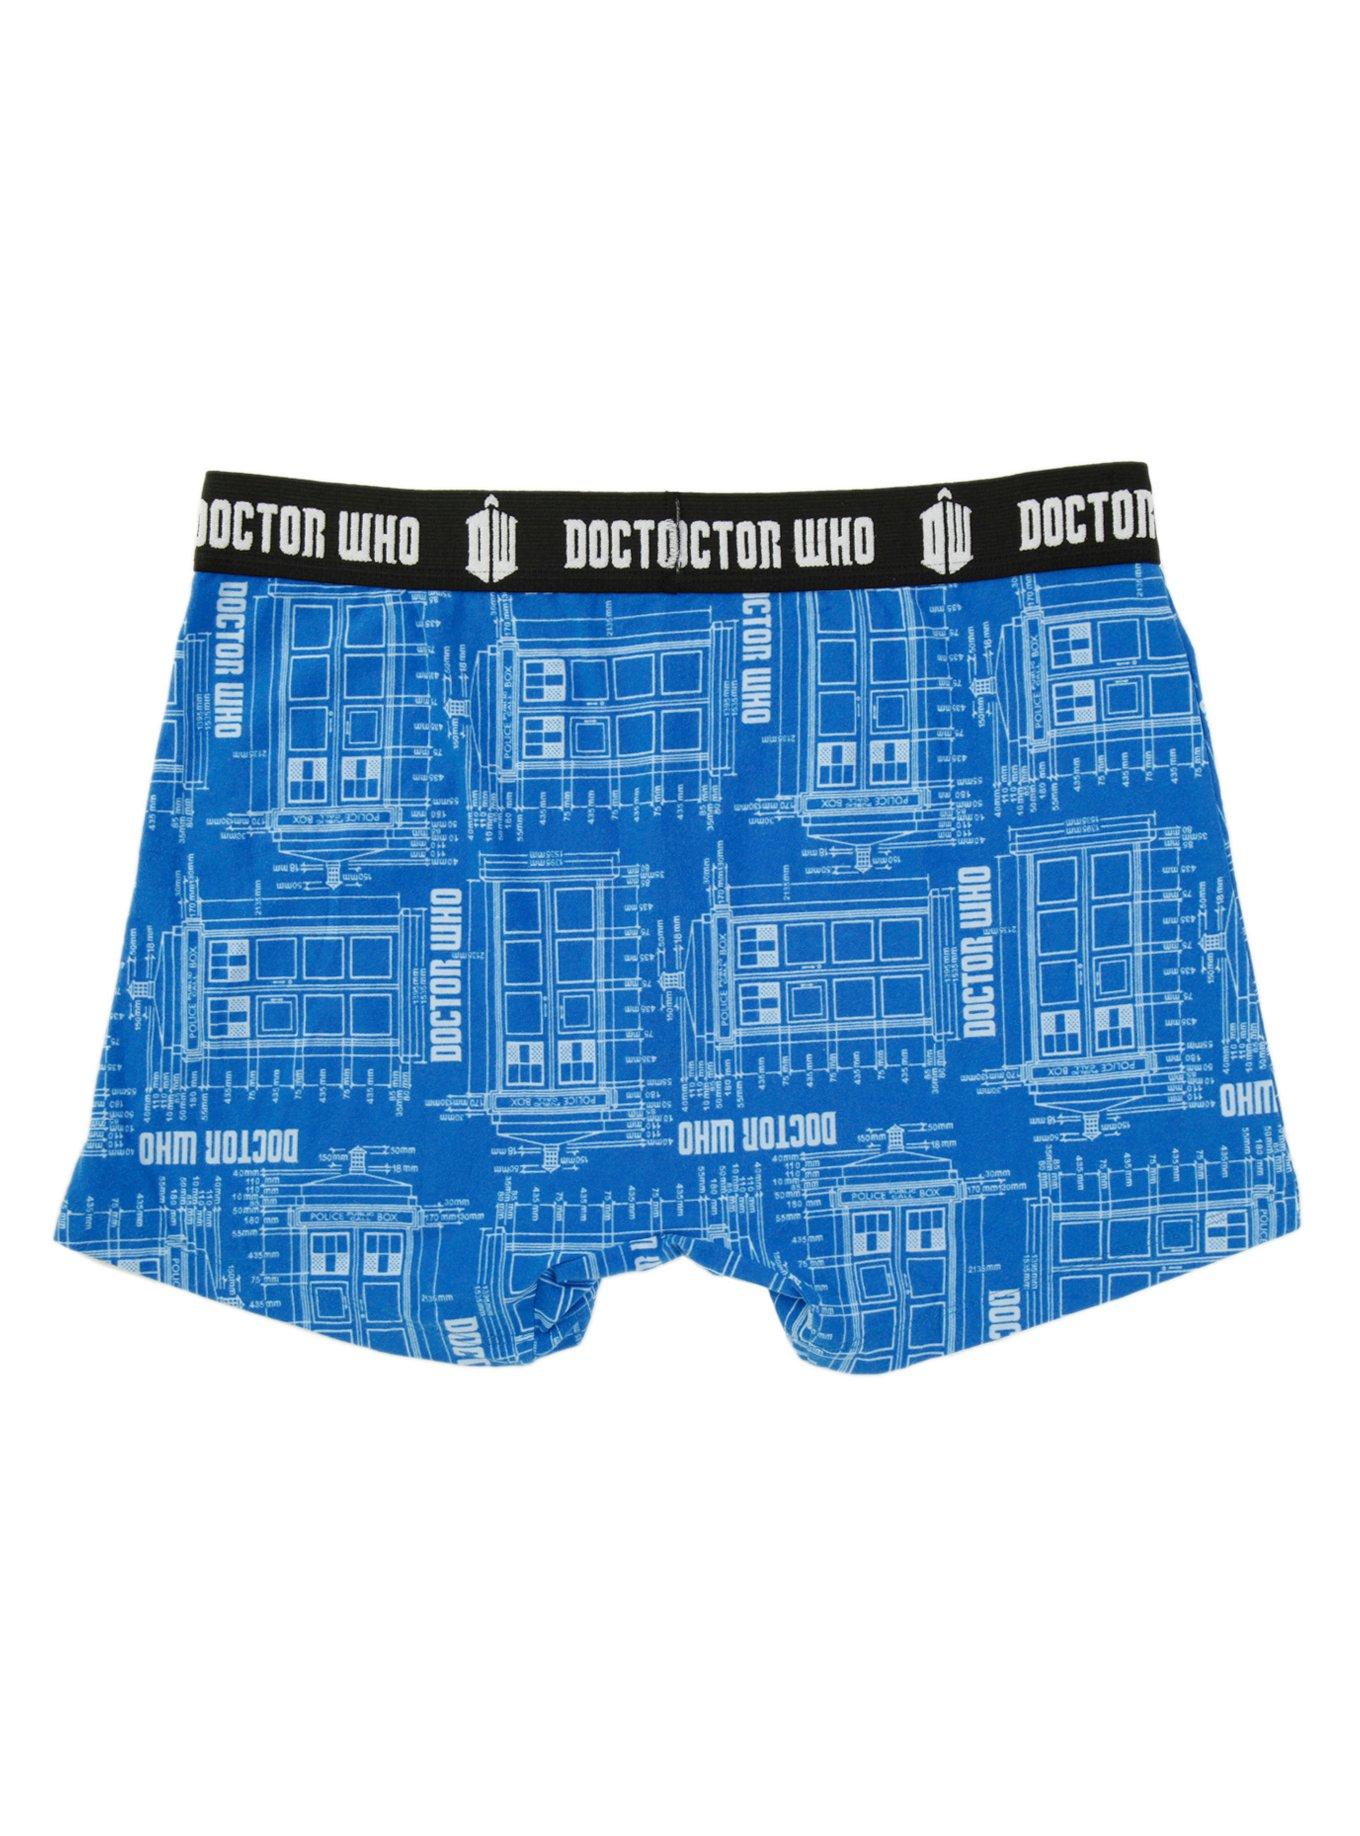 Doctor Who TARDIS Schematic Boxer Briefs, , alternate